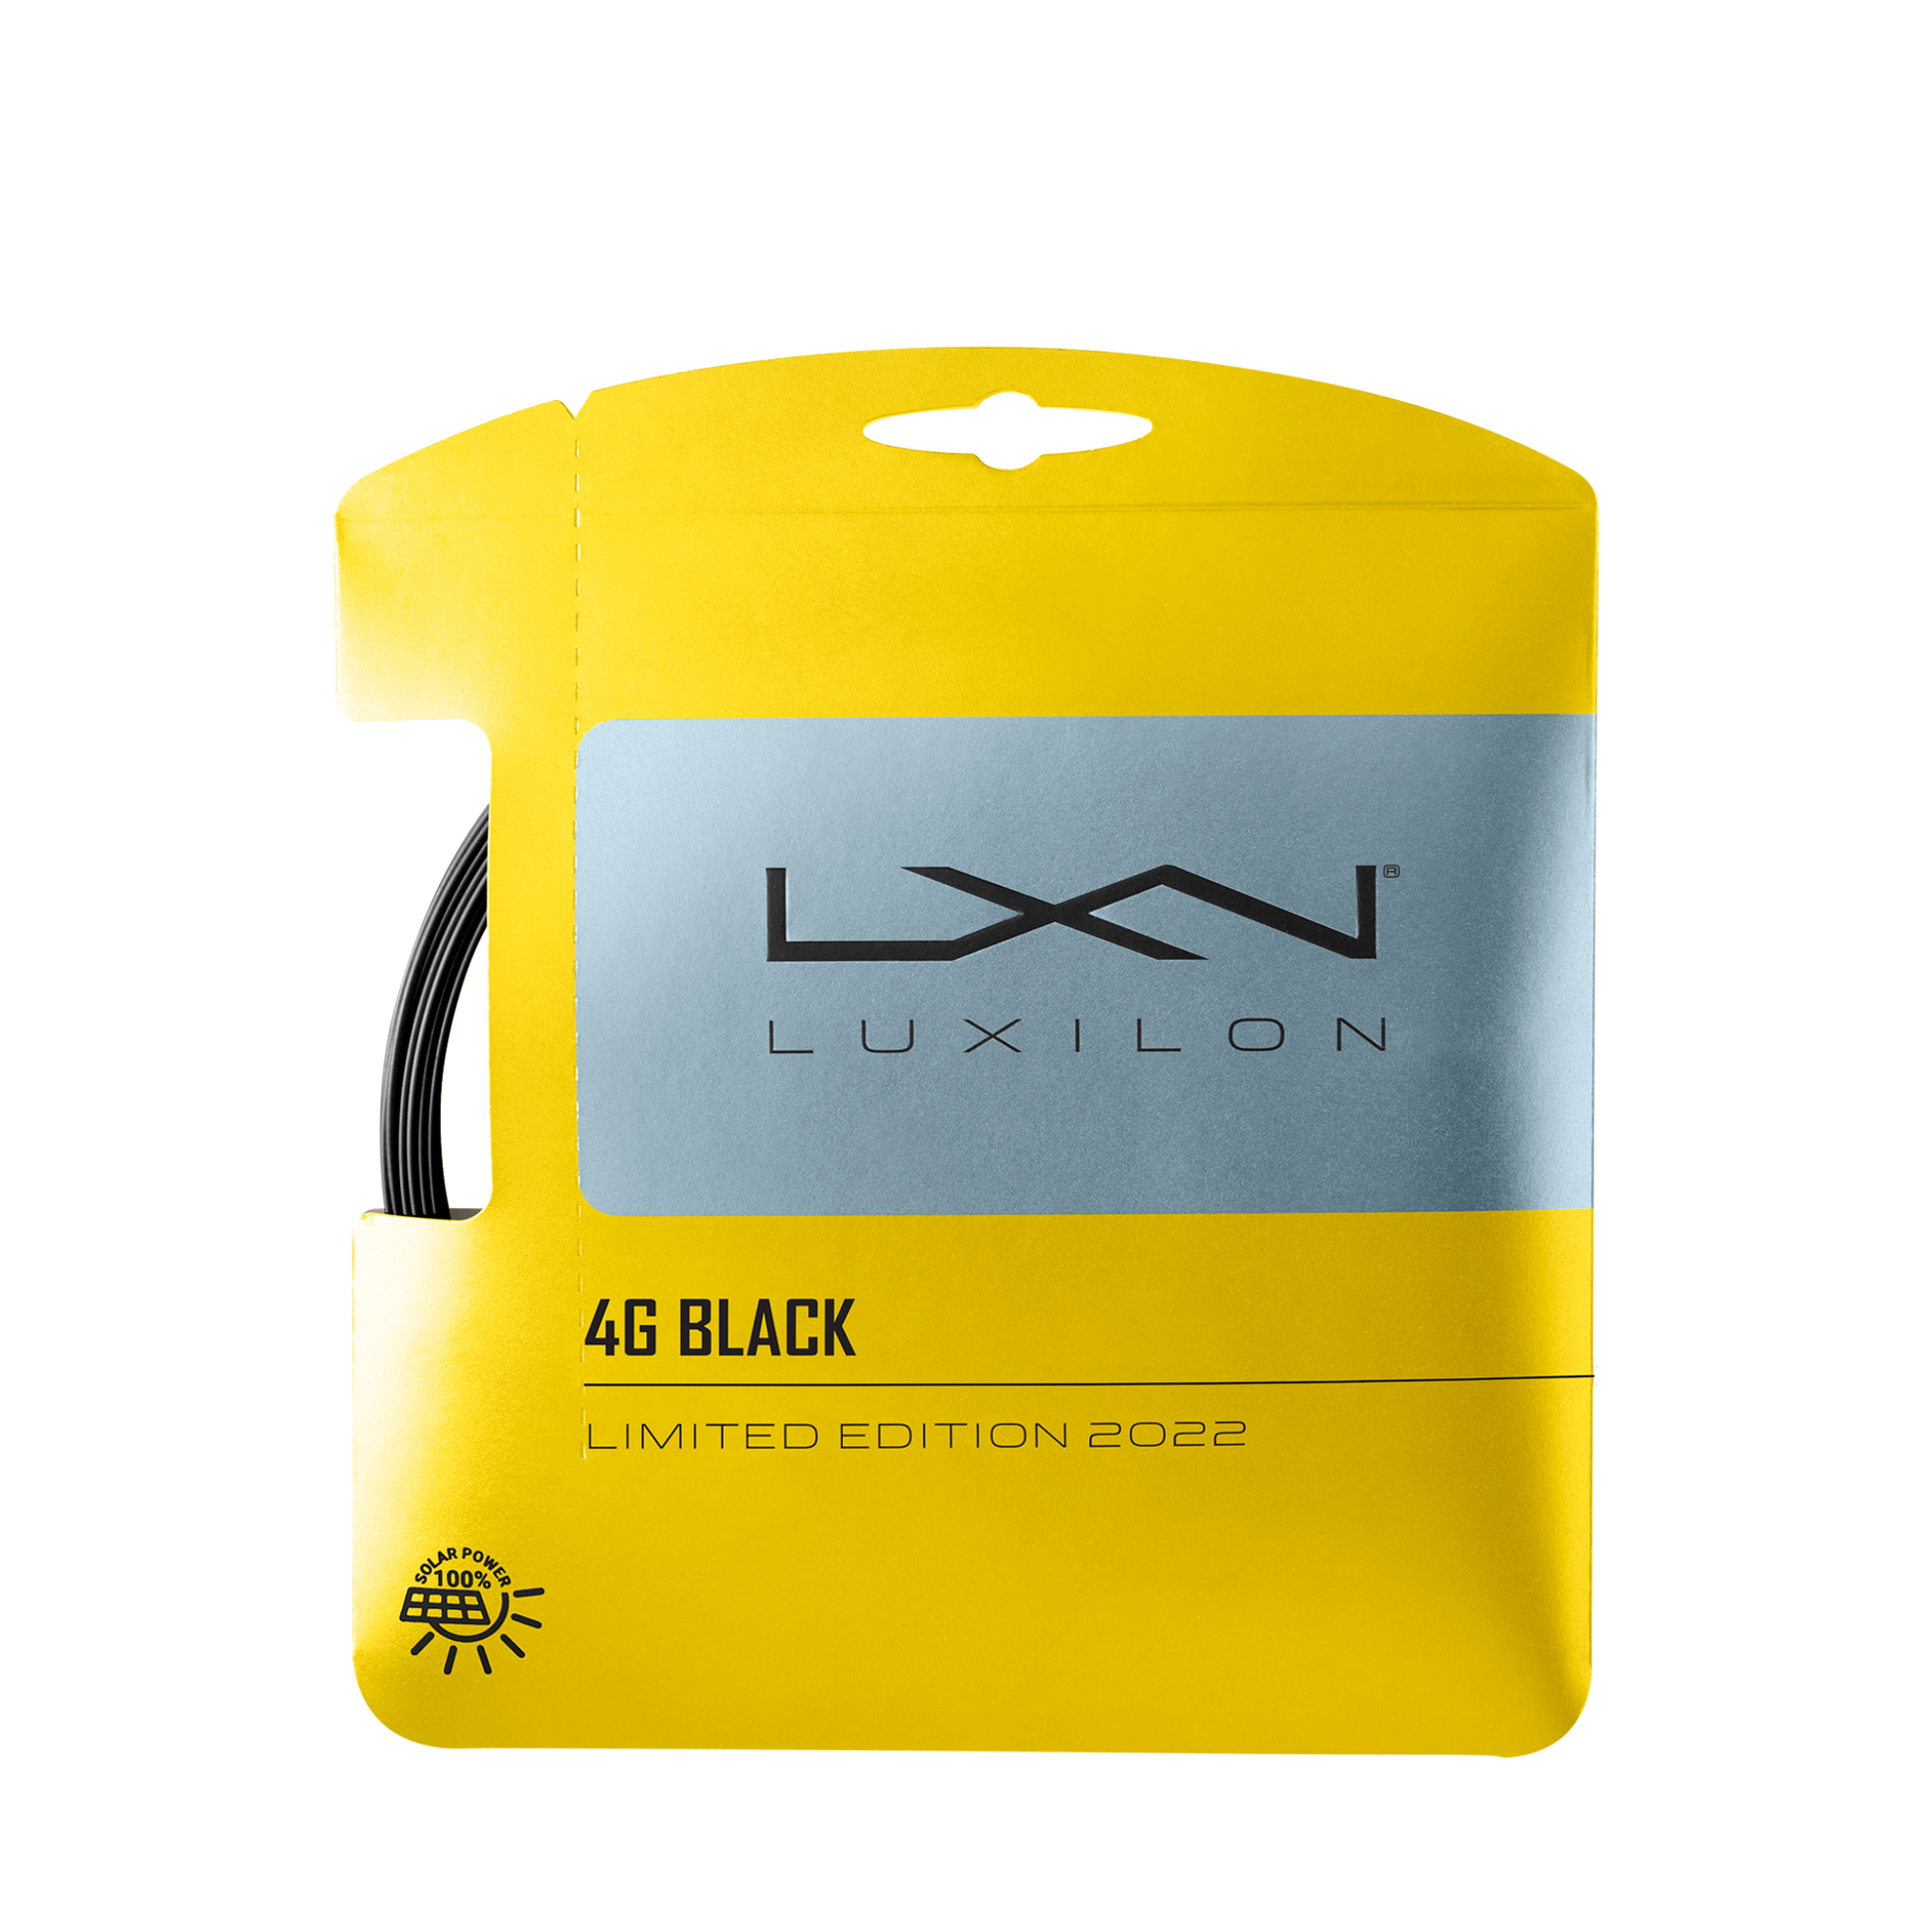 luxilon-4g-black-125-set